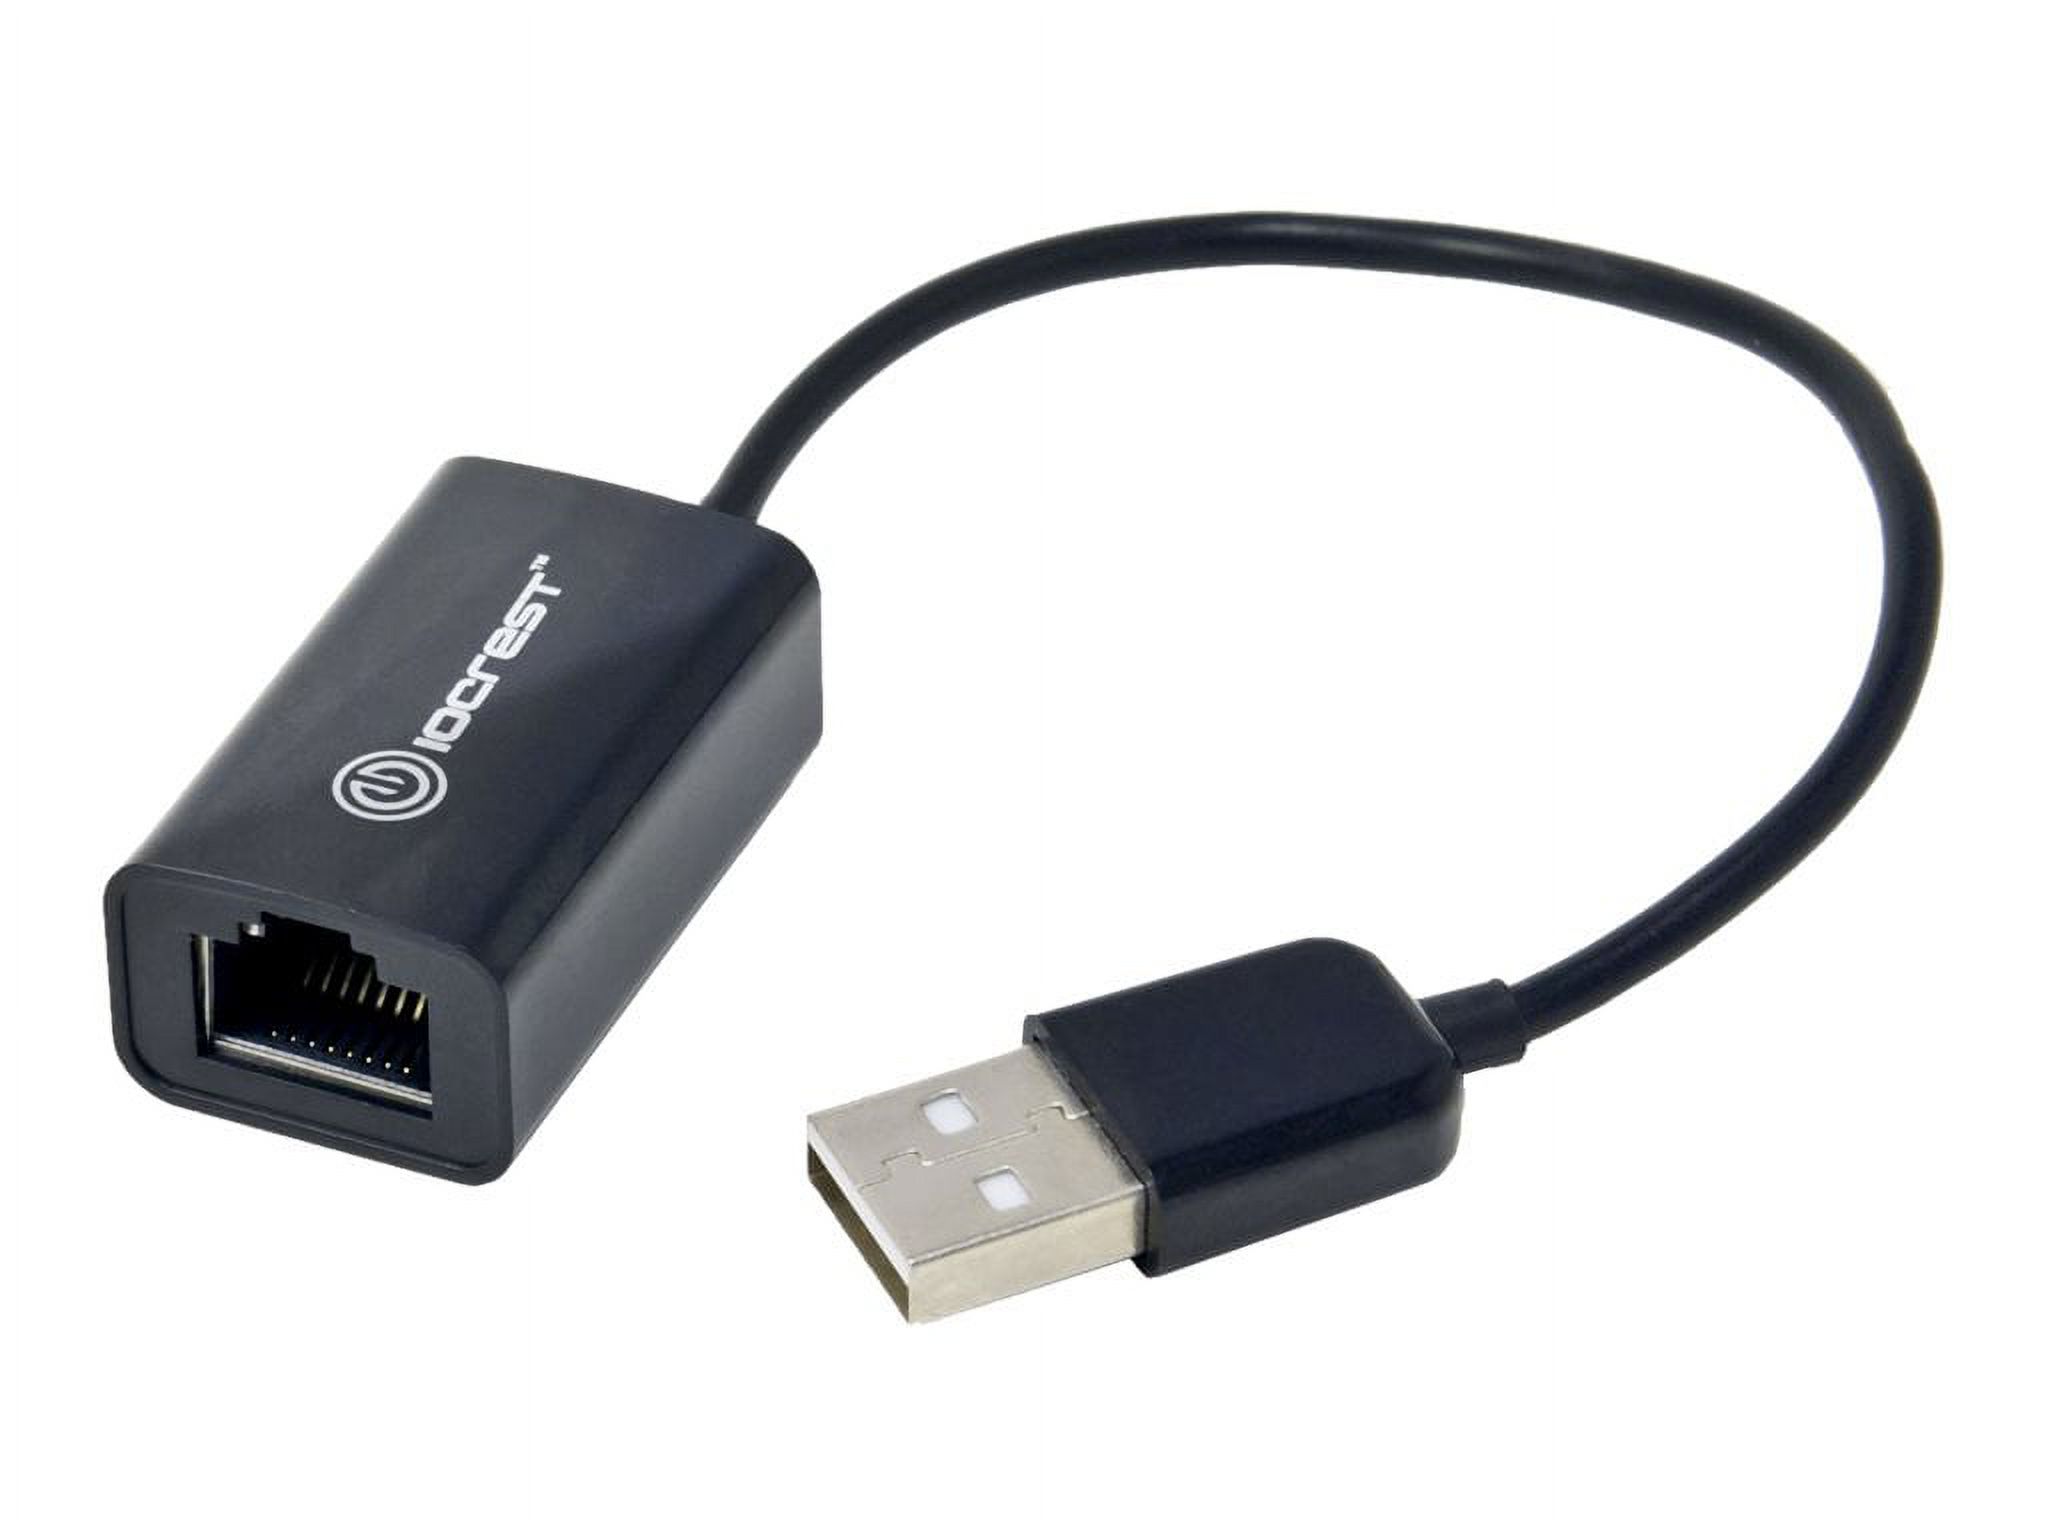 IOCrest USB 2.0 10/100Mbps LAN Ethernet RJ45 Adapter Connector Black - image 1 of 6